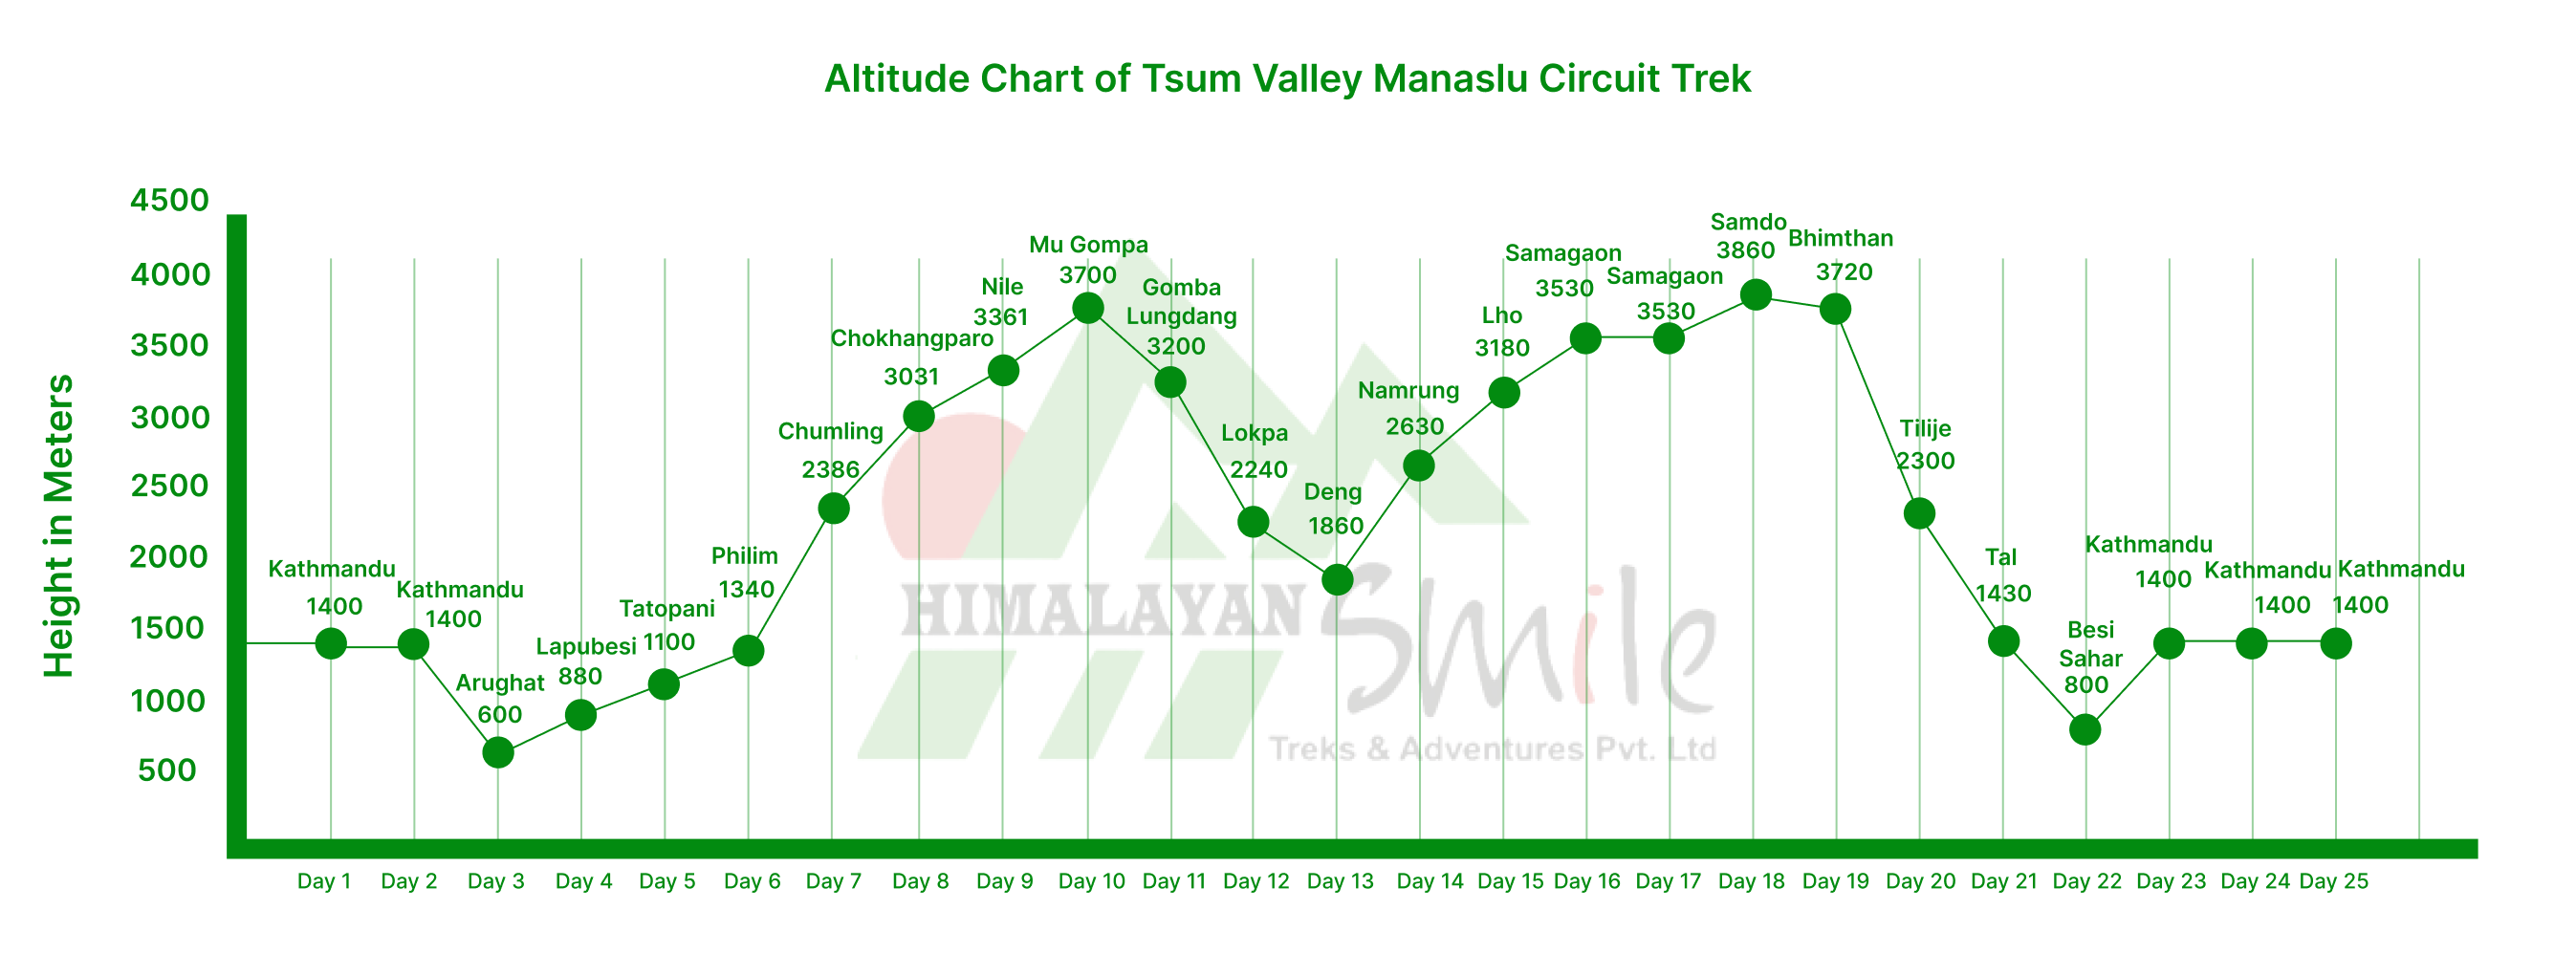 Manaslu Tsum Valley Trek Altitude chart